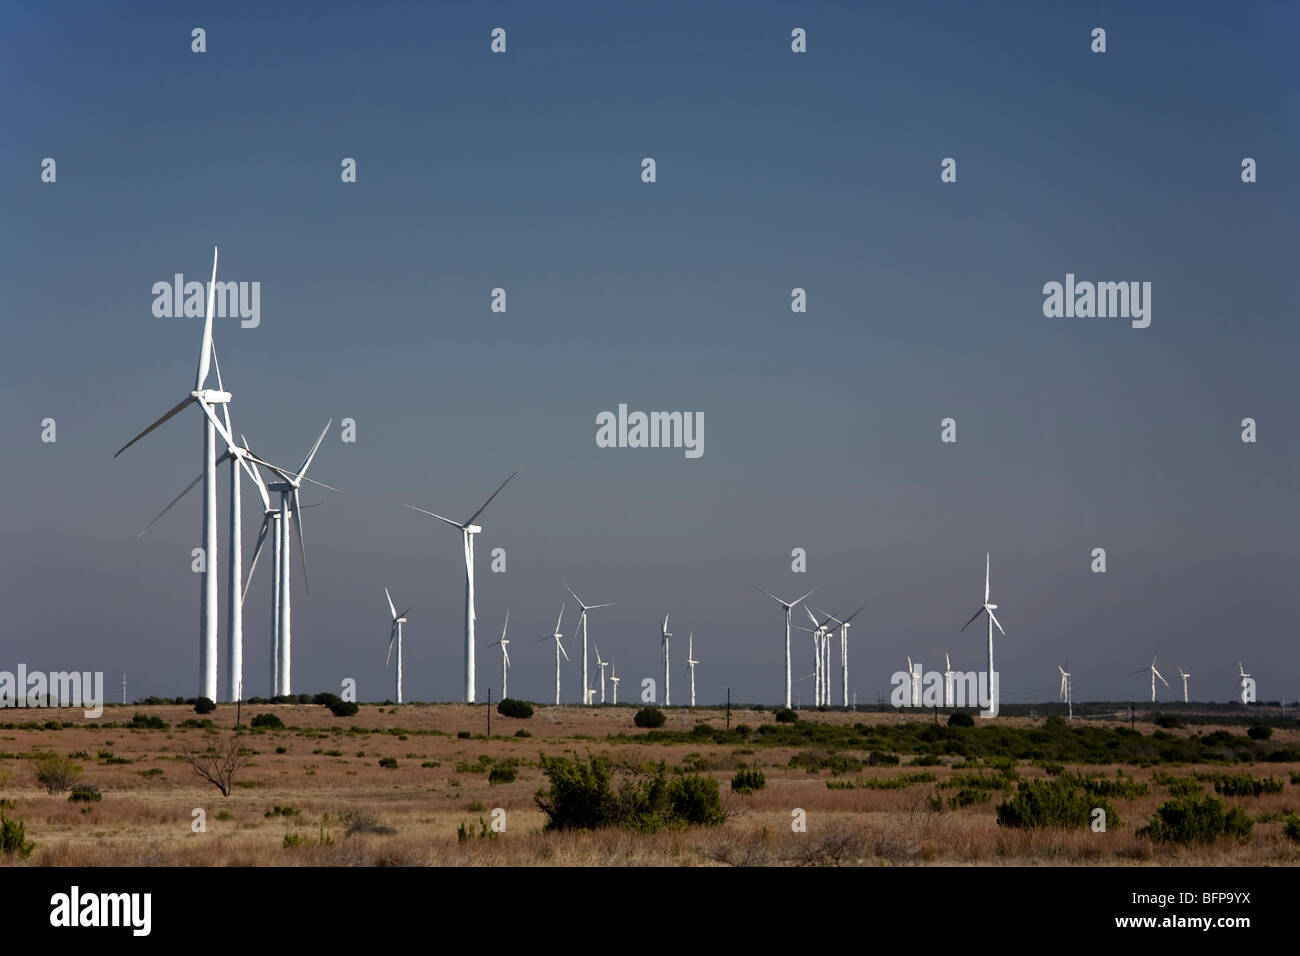 McCamey, Texas - USA. Wind turbines near McCamey, Texas. The area is known as the 'Wind Energy Capital of Texas'. Stock Photo